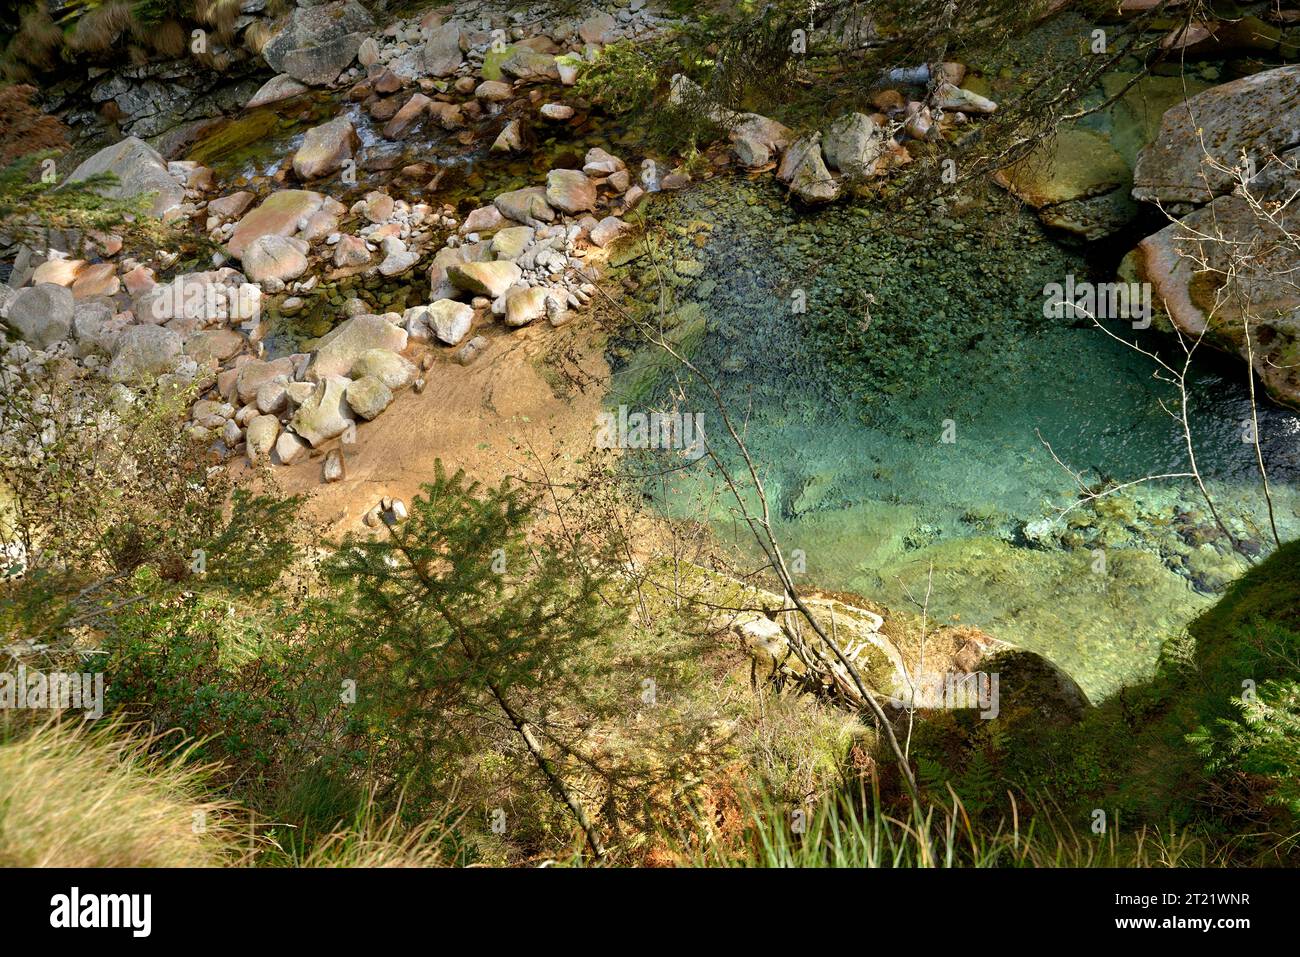 Nature Parck alta valle Antrona, limpide de ruisseau Troncone dans la nature sauvage Banque D'Images